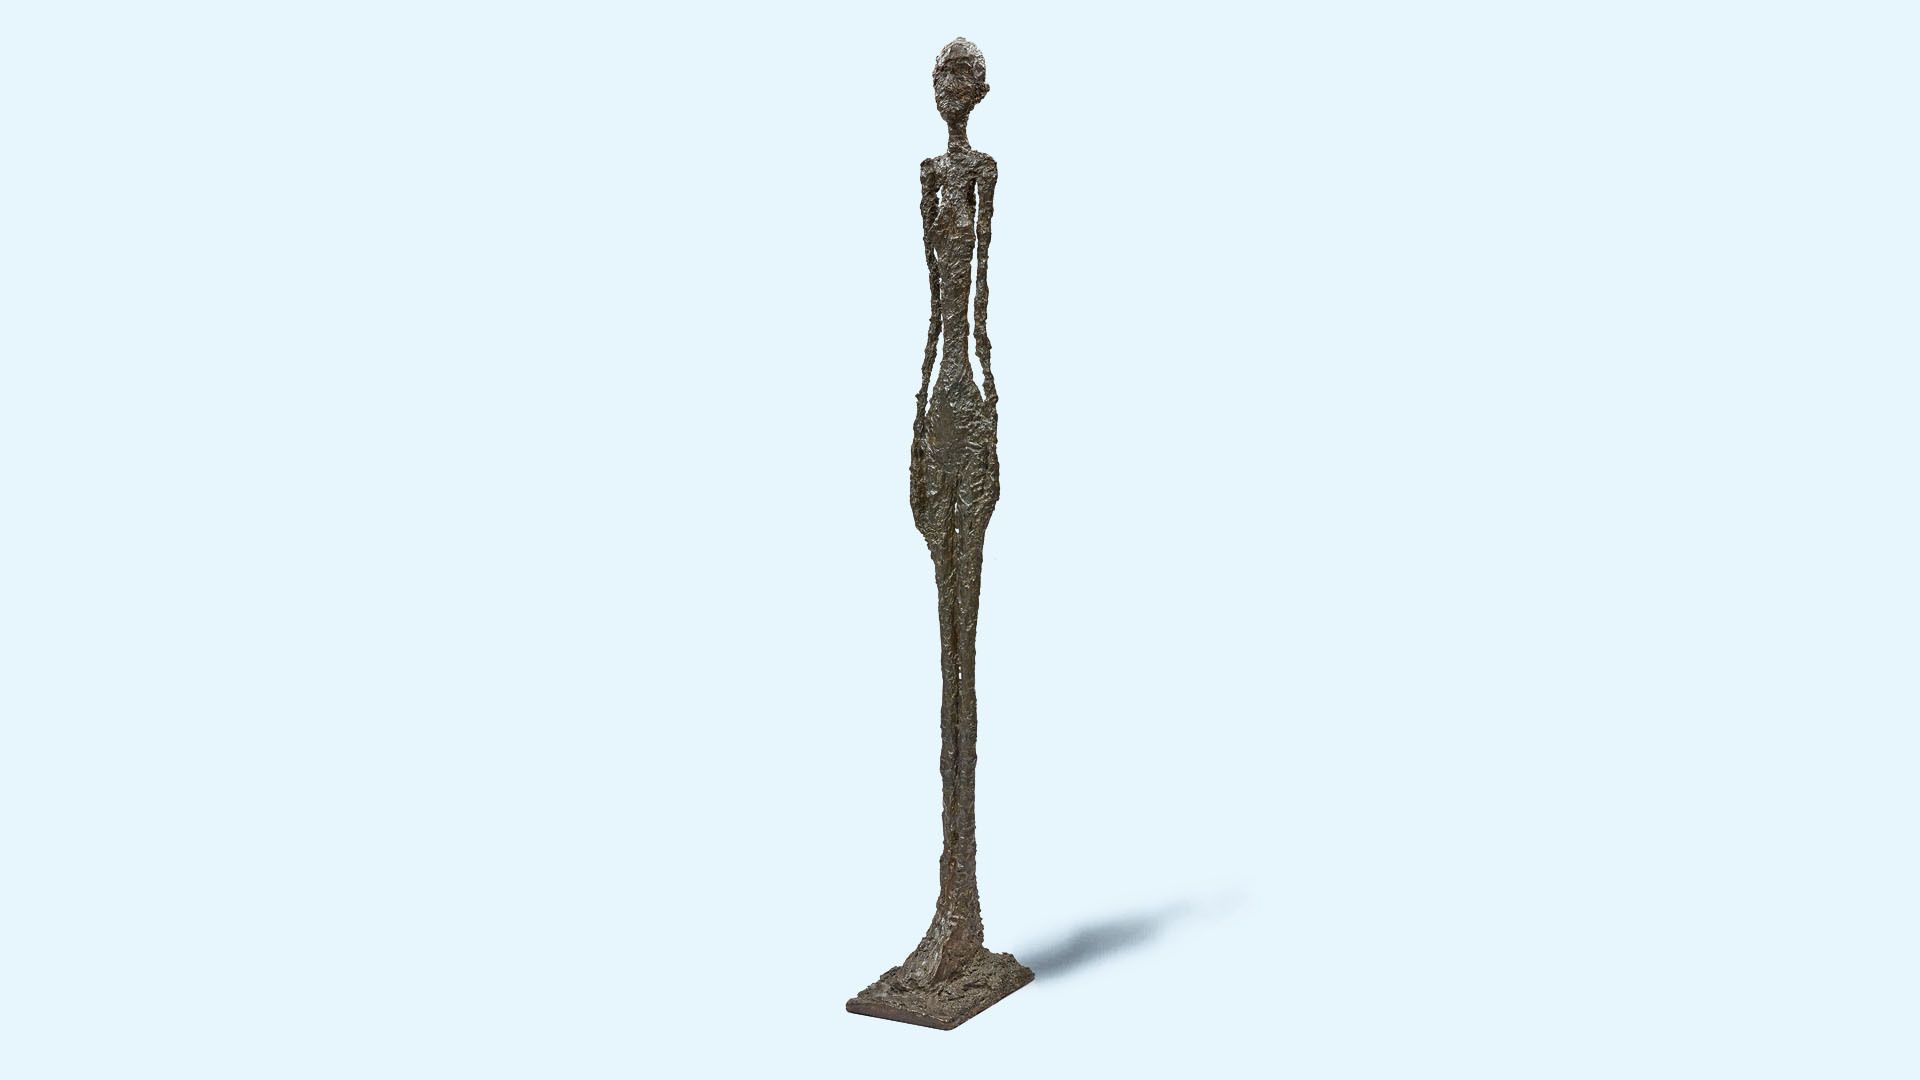 Grande femme I, by Alberto Giacometti